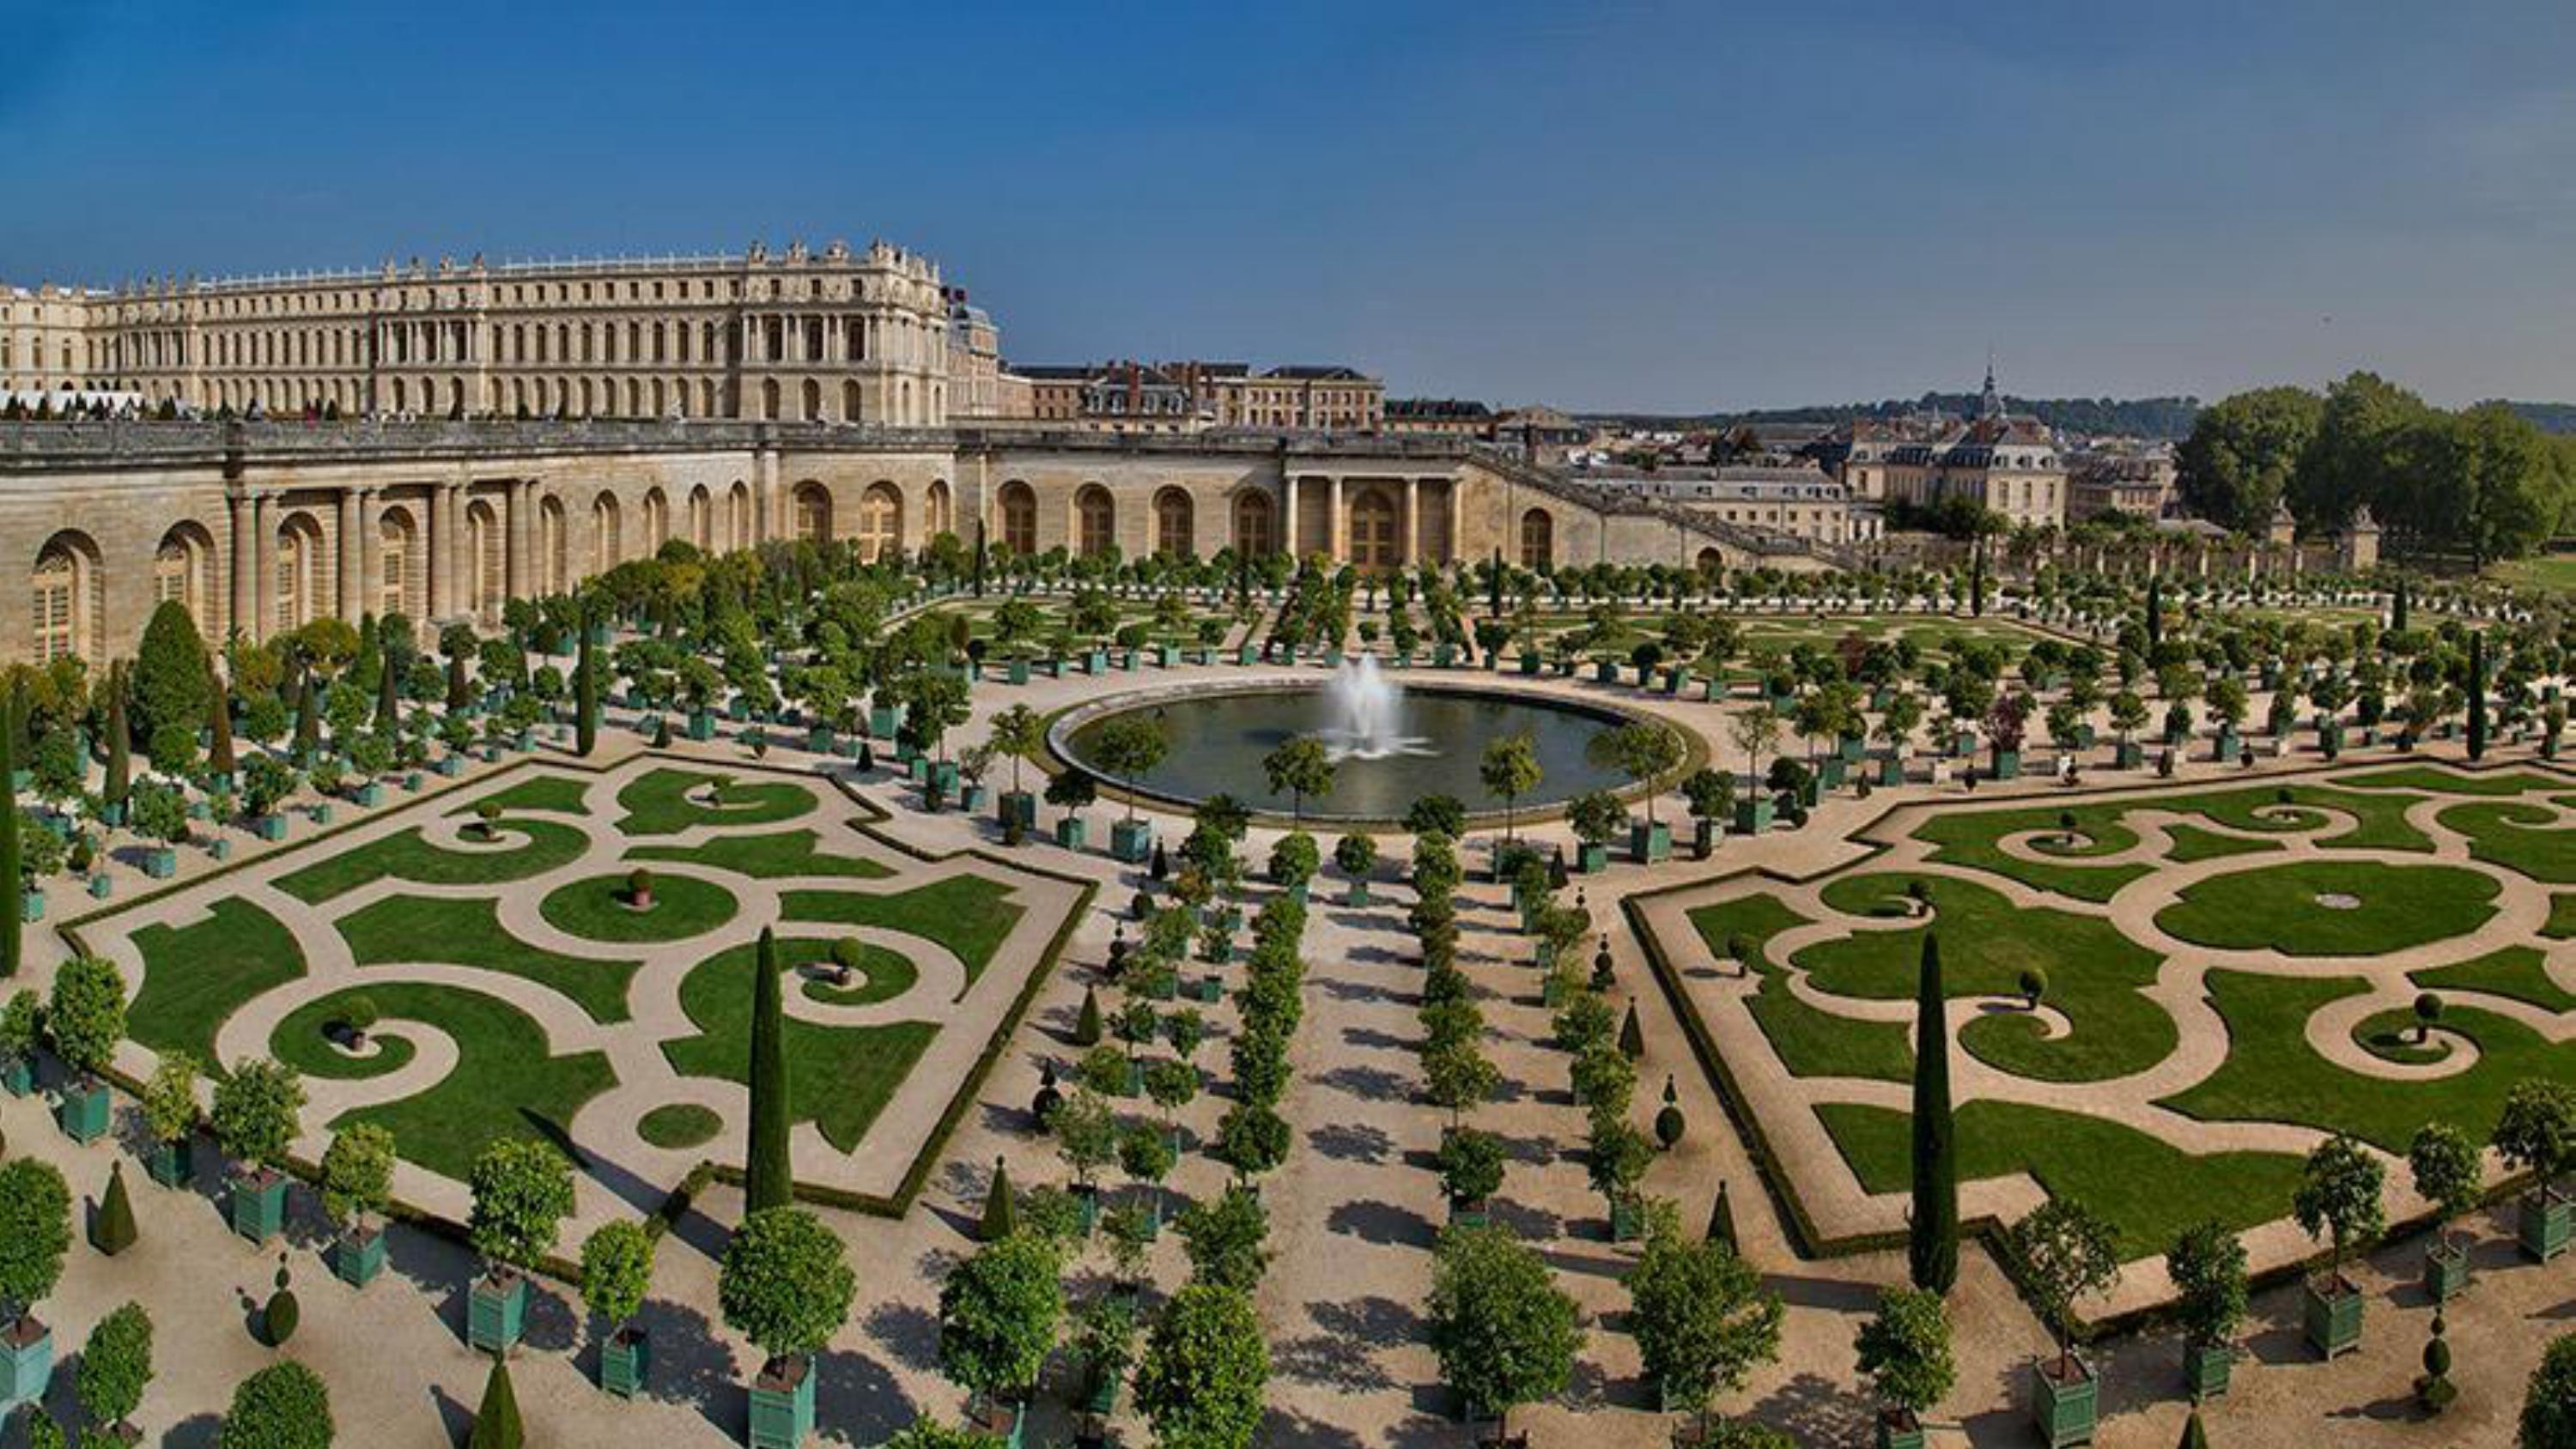 Chateau de versailles. Версальский дворец и парк. Андре Ленотр Версальский парк. Дворец и парк в Версале Франция. Оружейная площадь Версальского дворца.